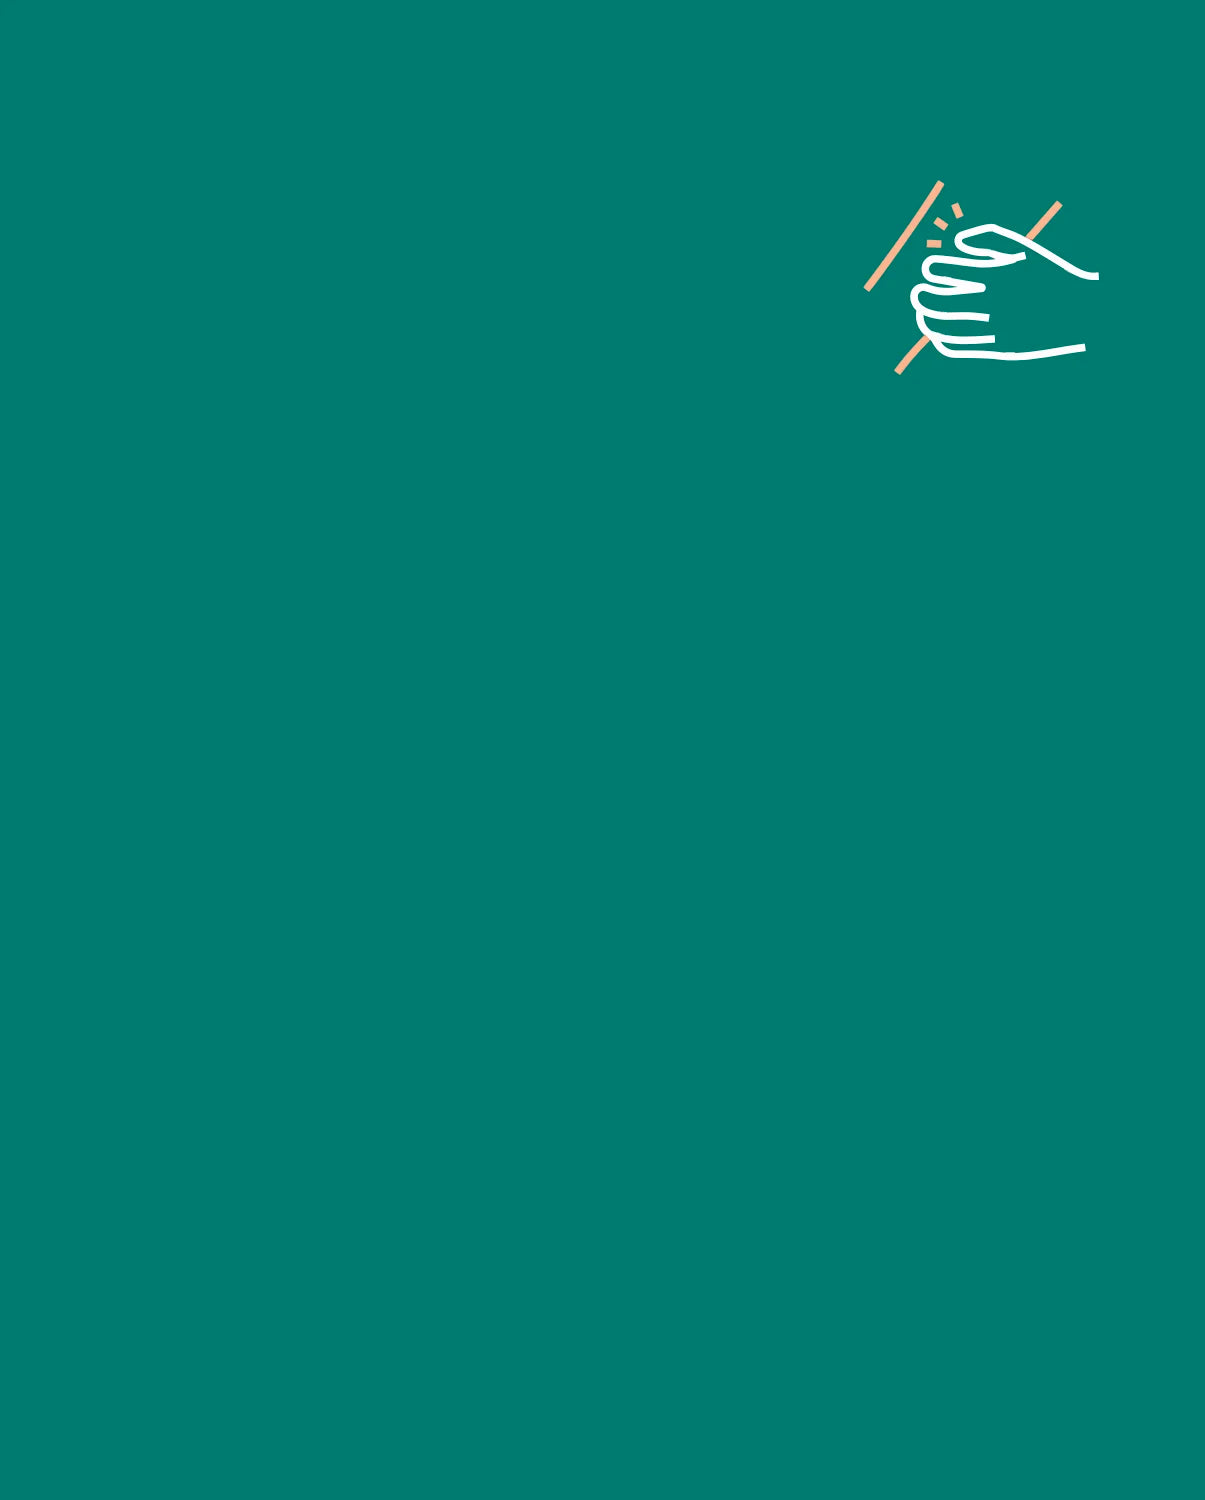 Auf azurgrünem Hintergrund ist ein Symbol abgebildet, welches den  juckreizlindernden und schuppenreduzierenden Effekt des Produkts symbolisieren soll.